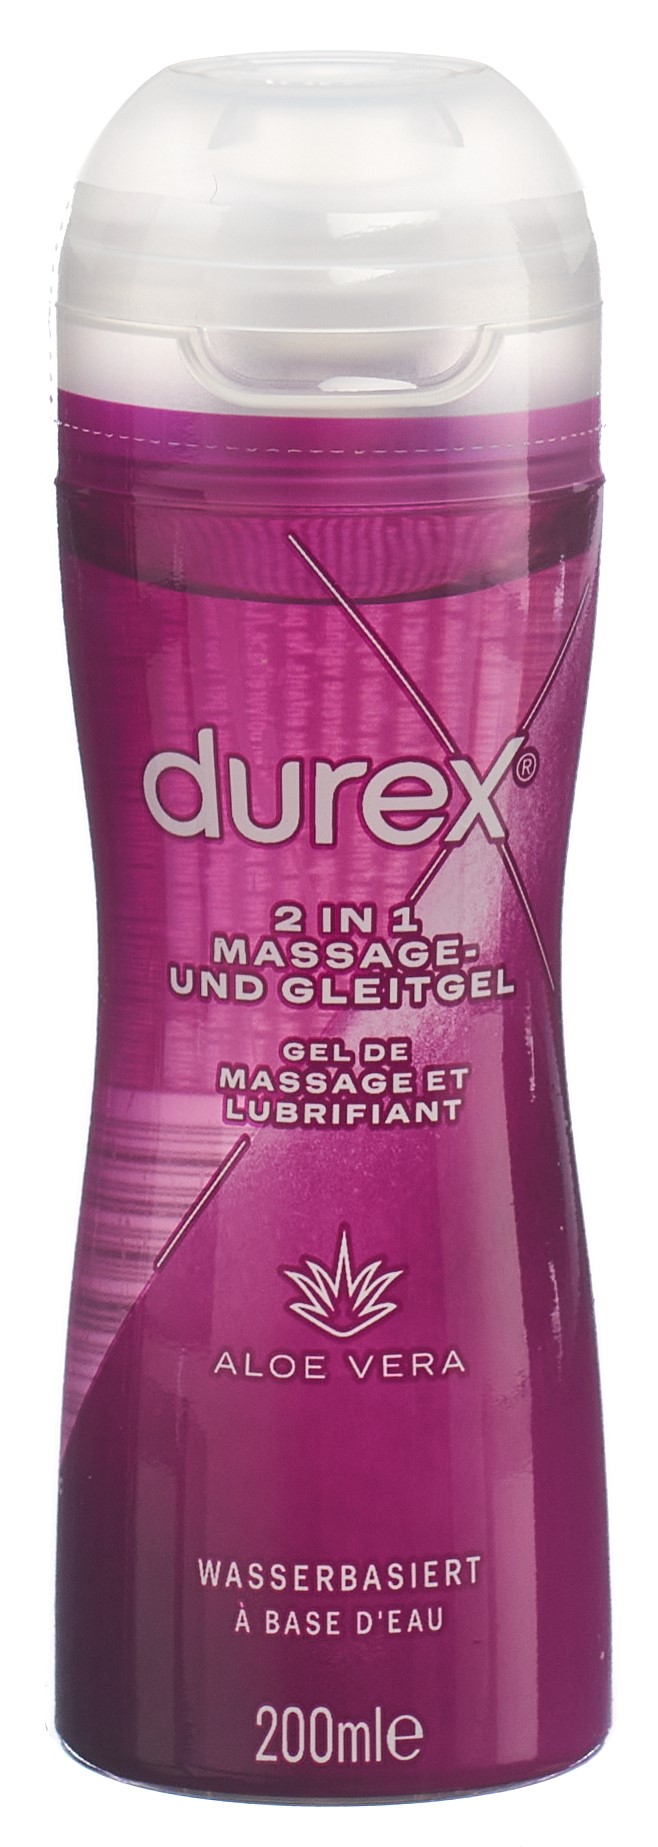 DUREX Play Massage und Gleitgel 2 in 1 200 ml - Dr. Noyer Apotheken -  Online Shop